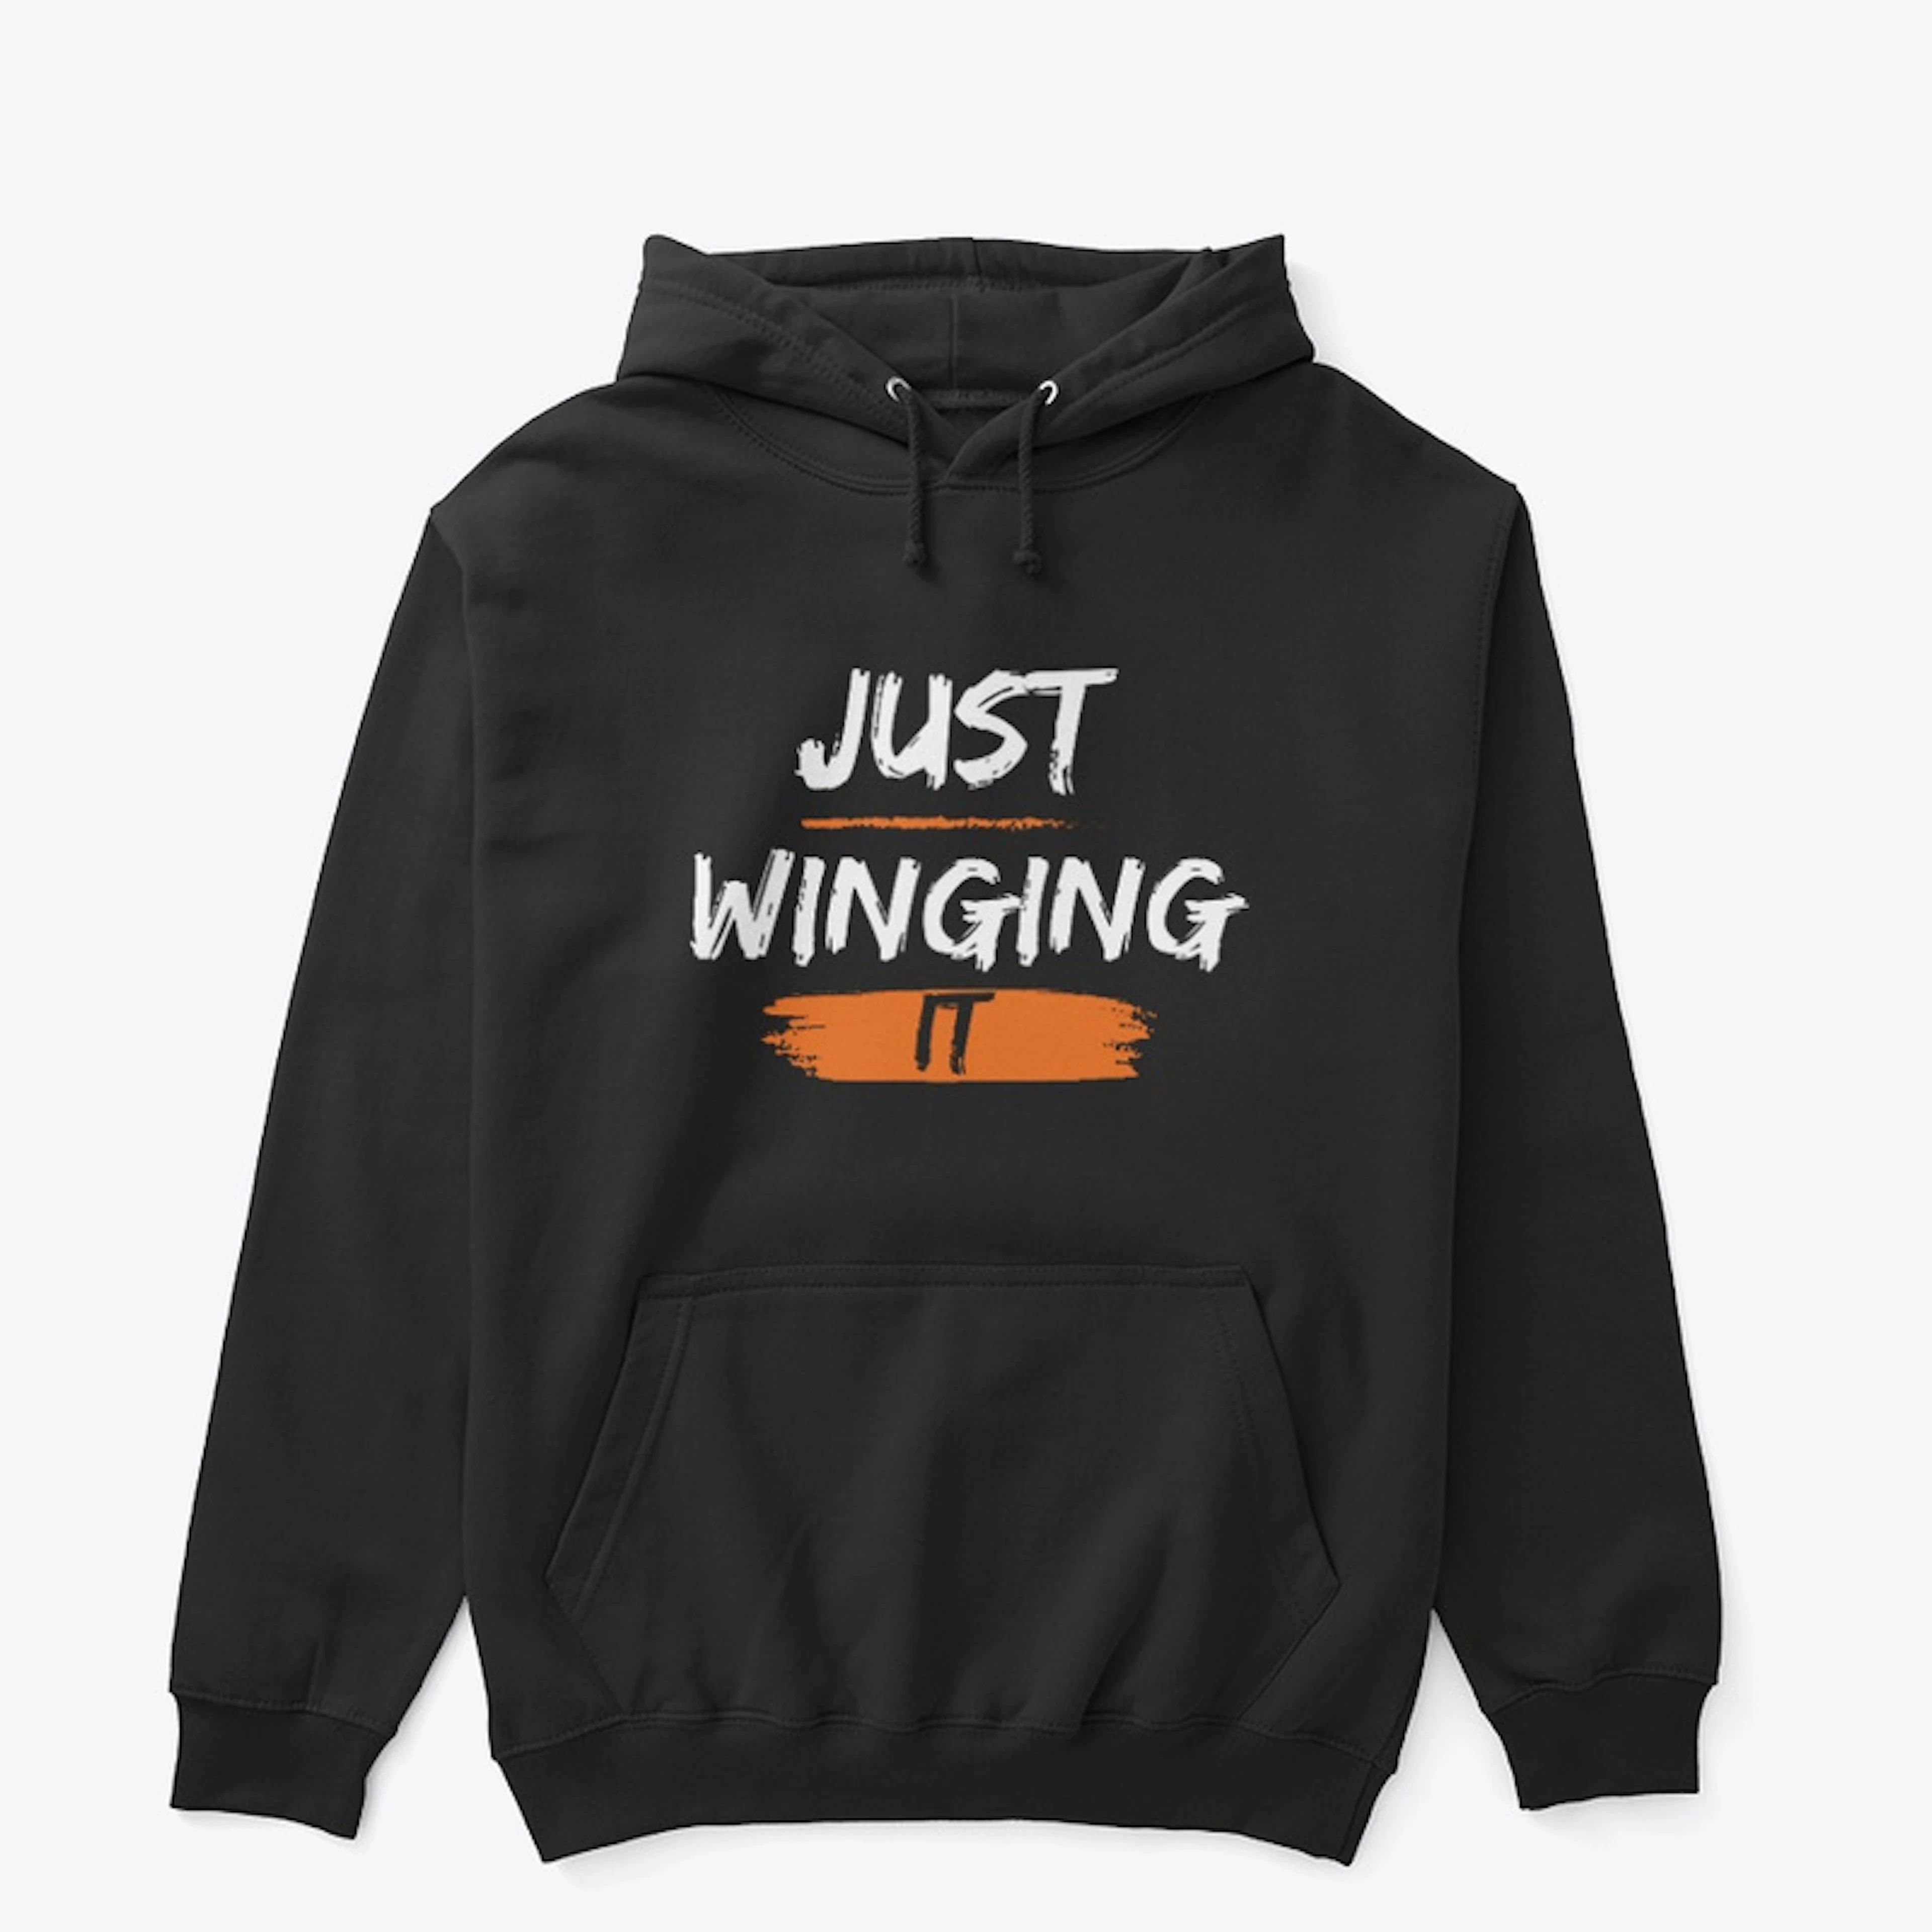 Just Winging It hoodie